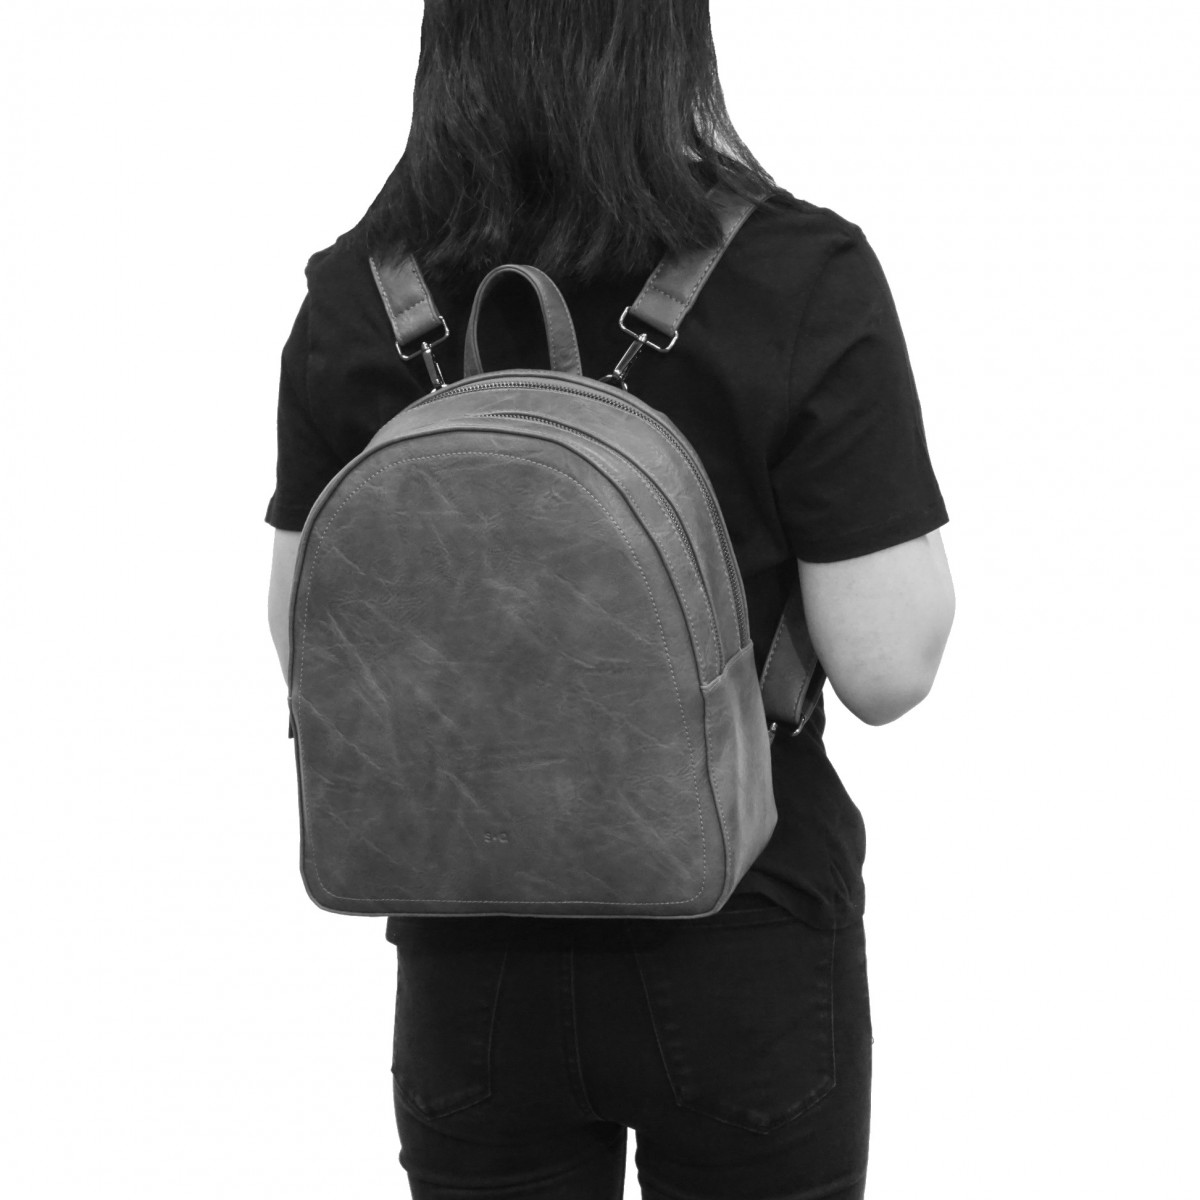 Bonnie LG Backpack - Stone Grey